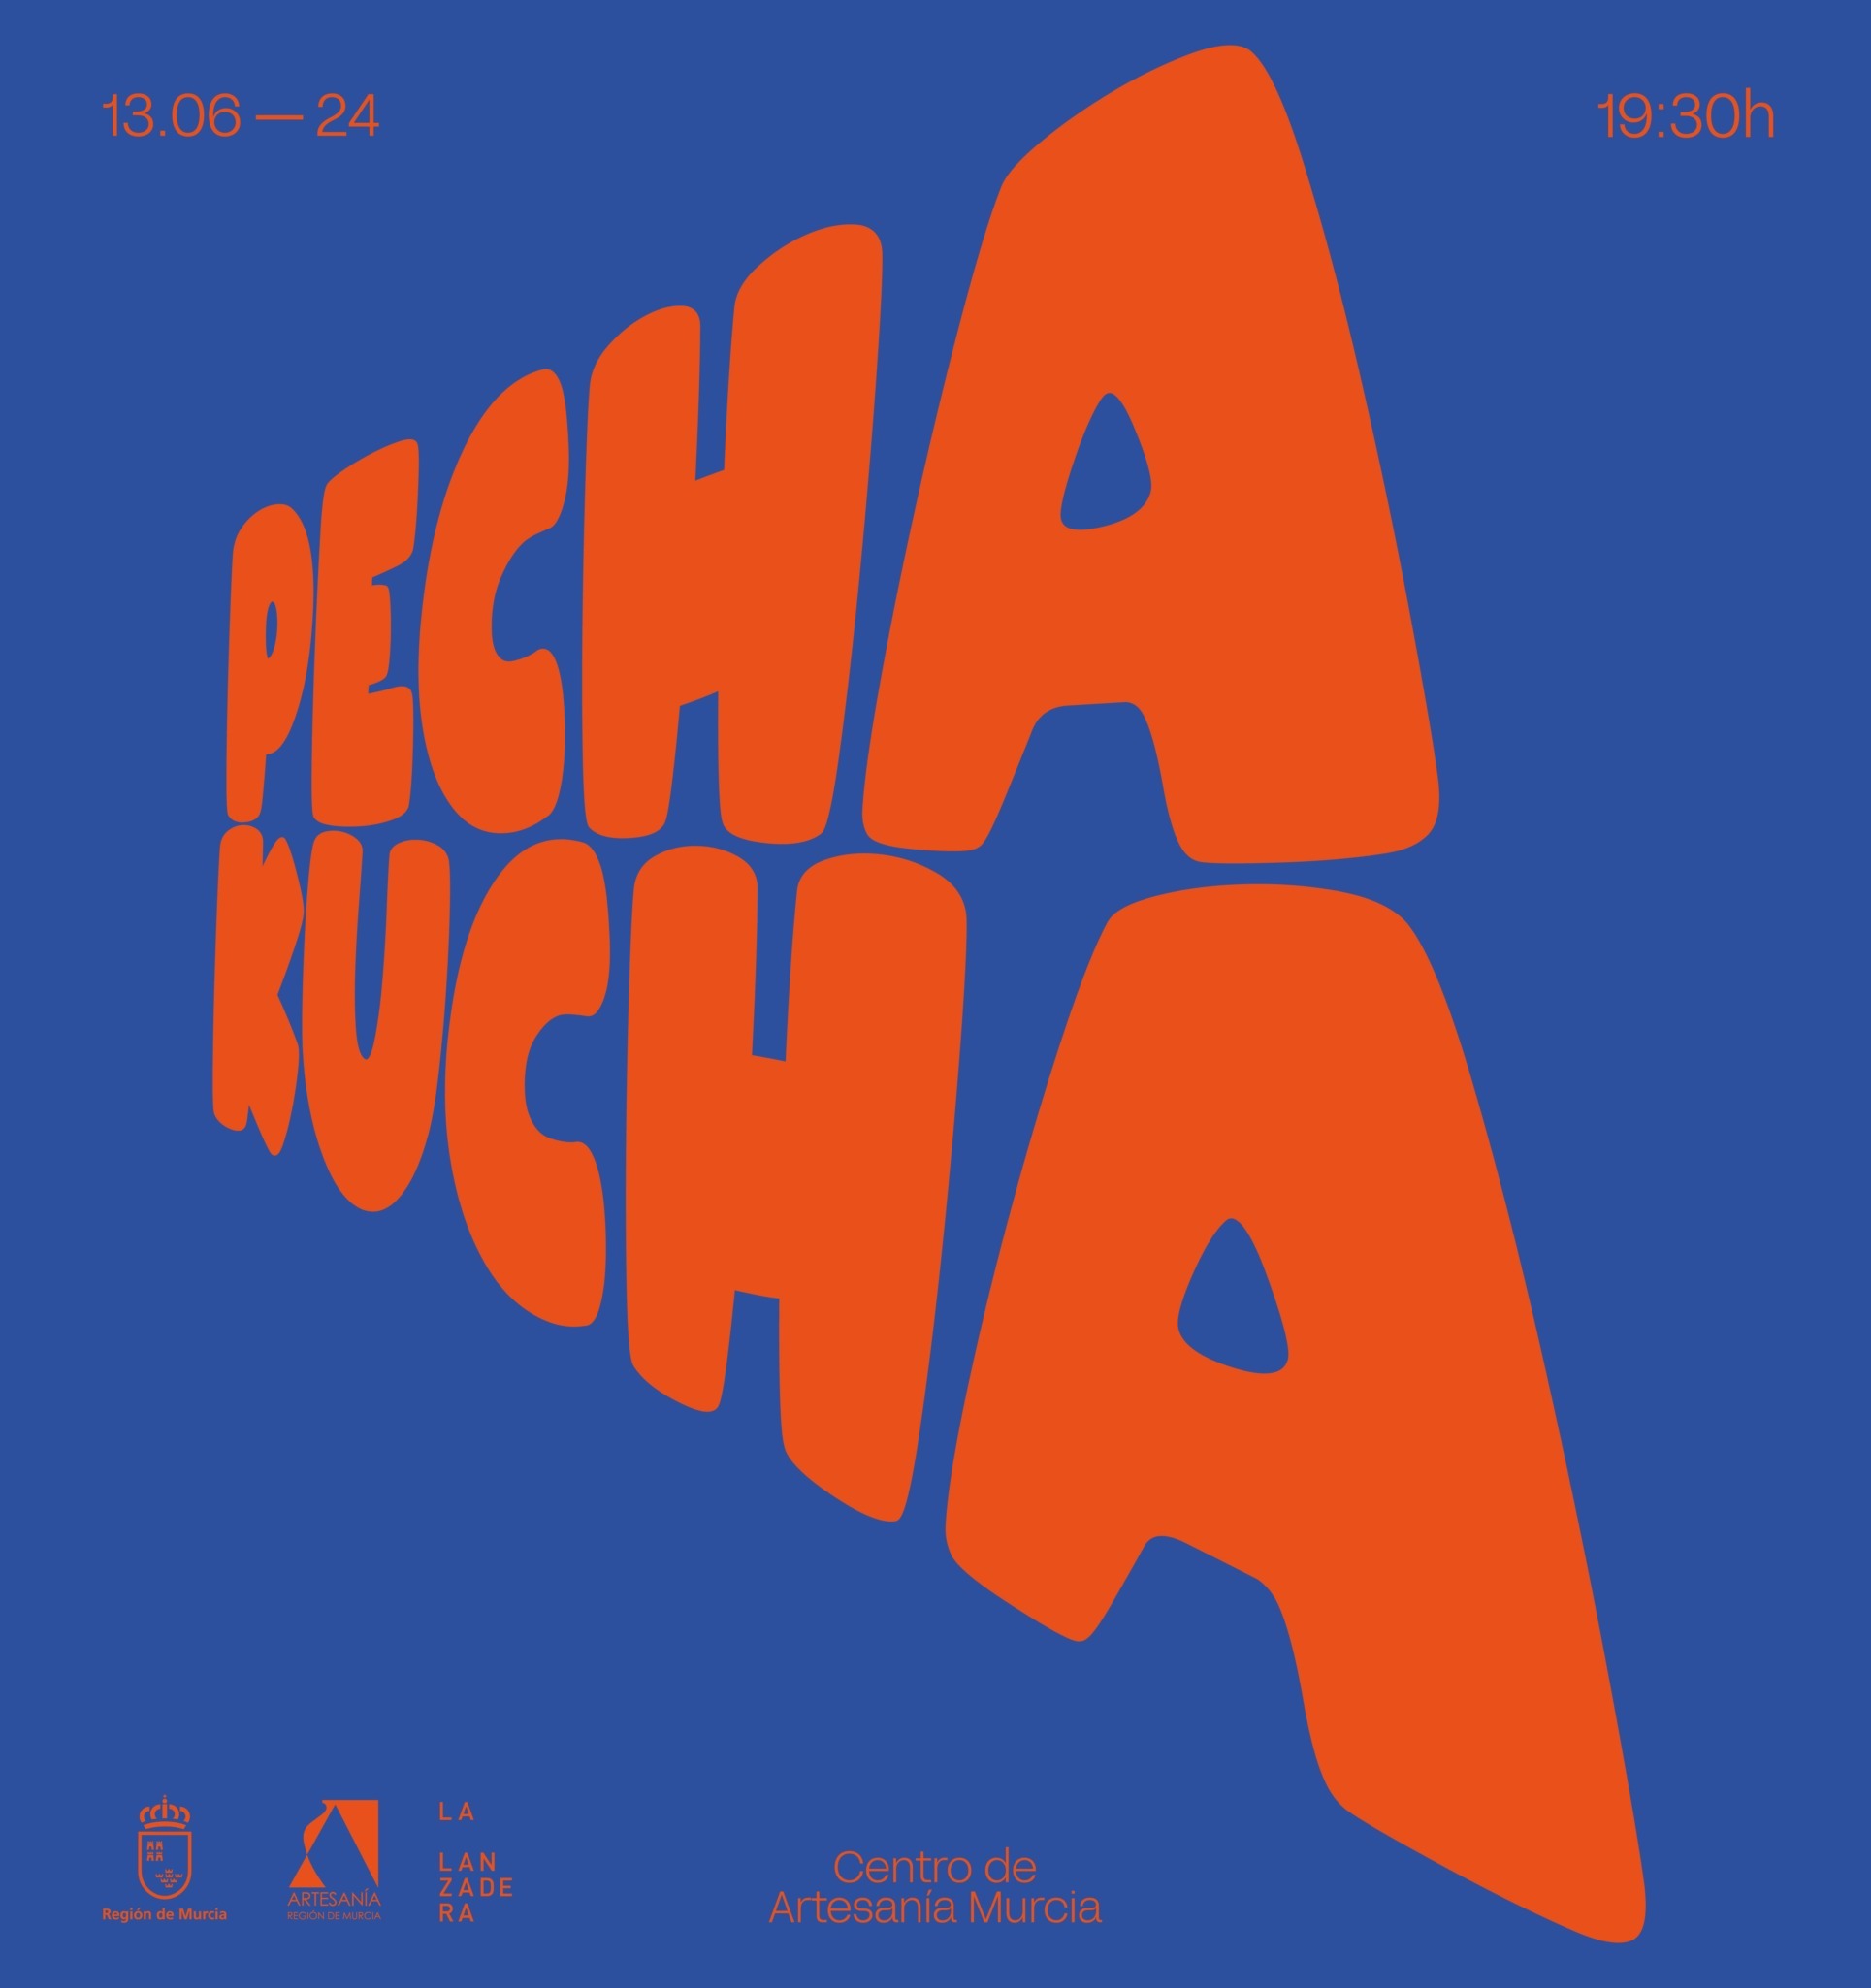 Pecha Kucha Night regresa a Murcia en su V edición